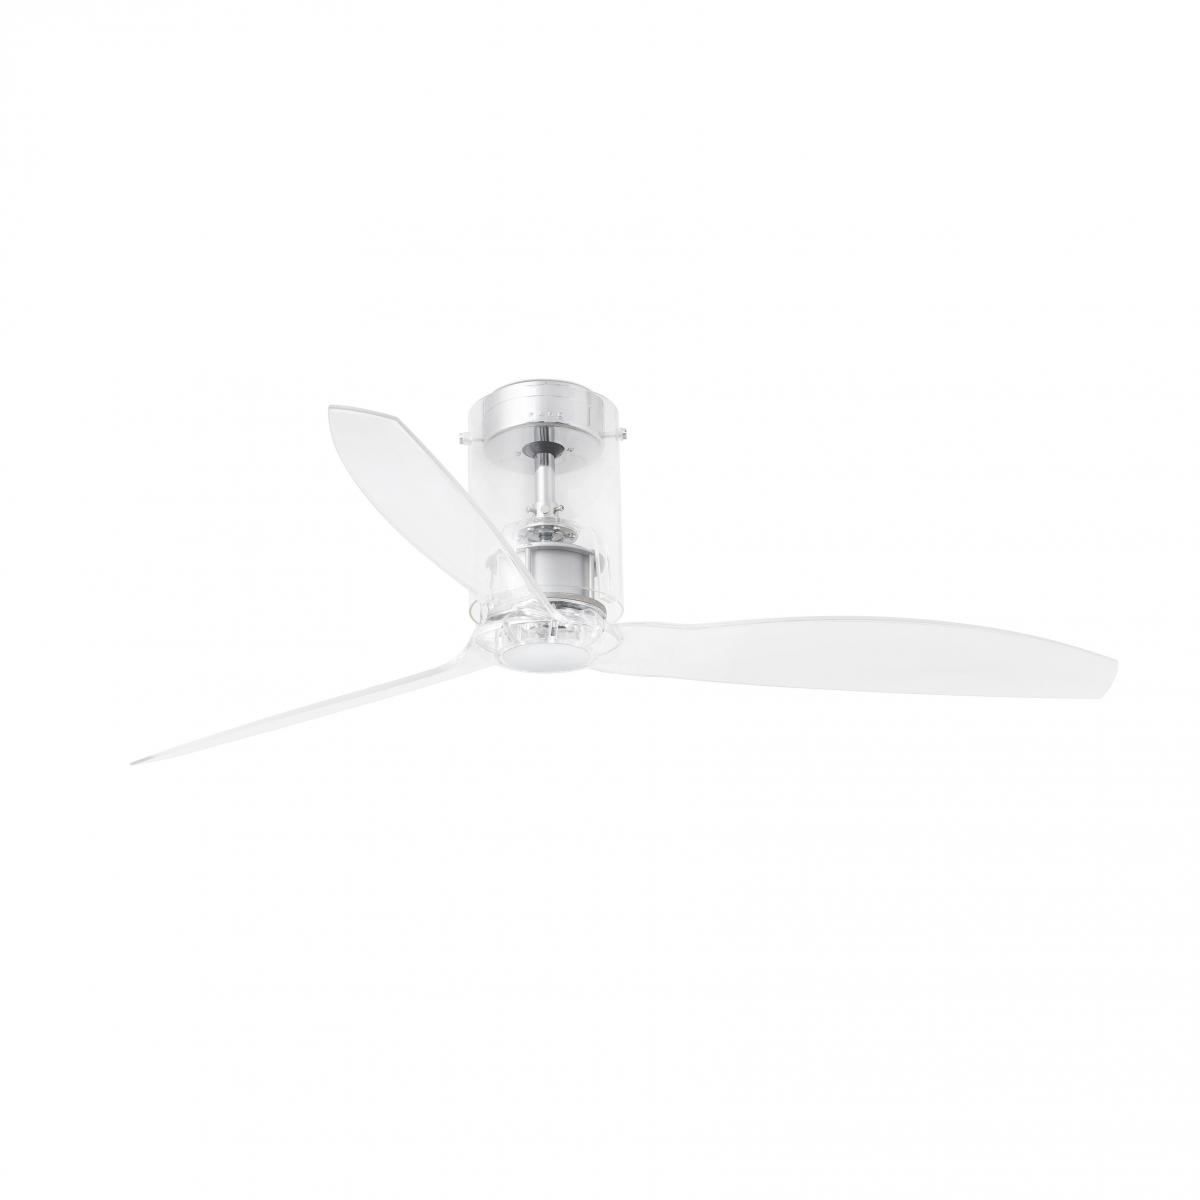 Прозрачный потолочный вентилятор Mini Tube Fan